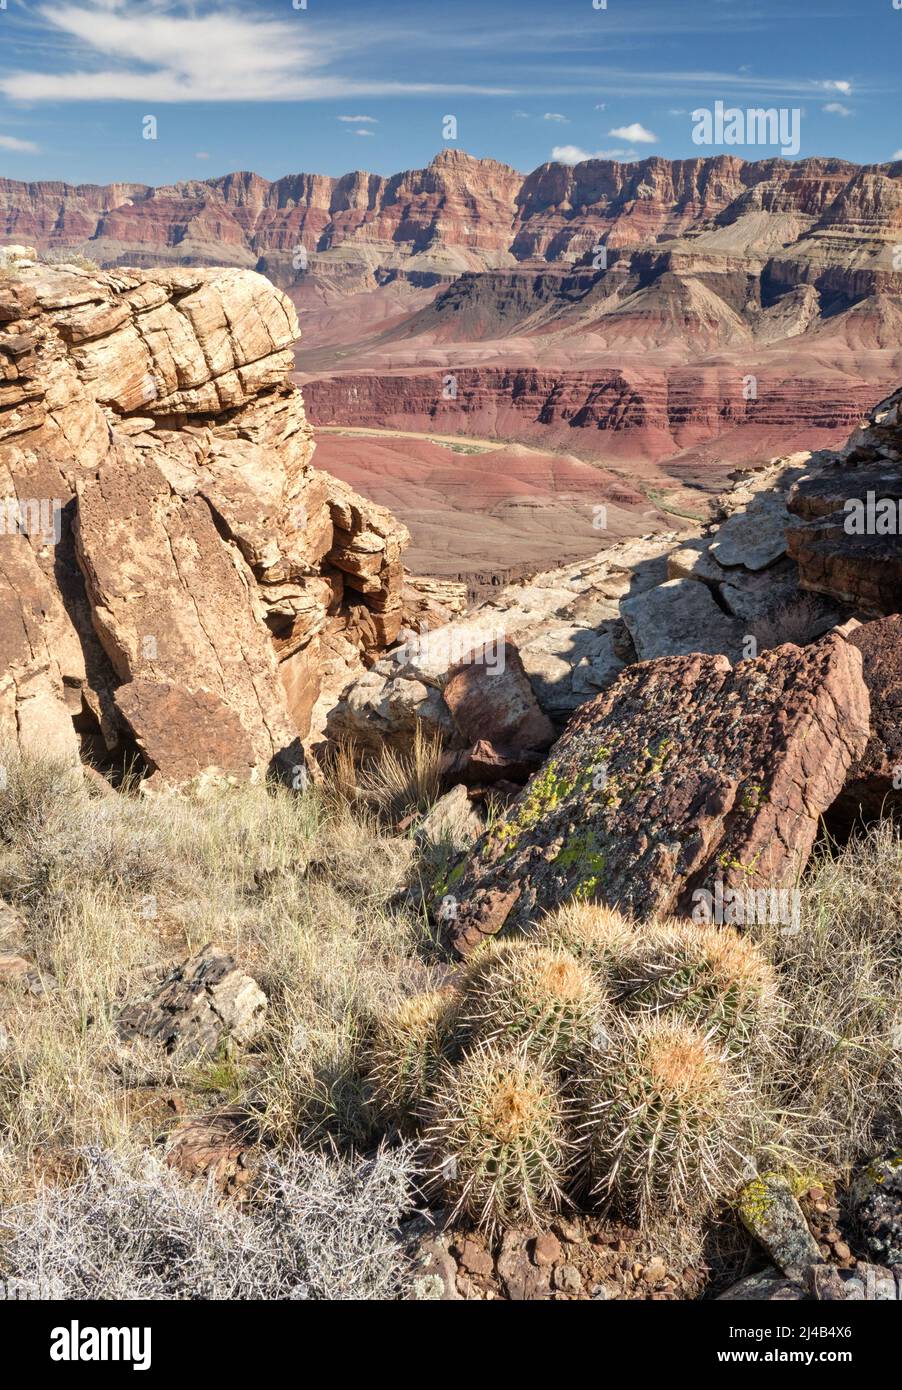 Barrel cactus near Unkar Creek in the Grand Canyon Stock Photo